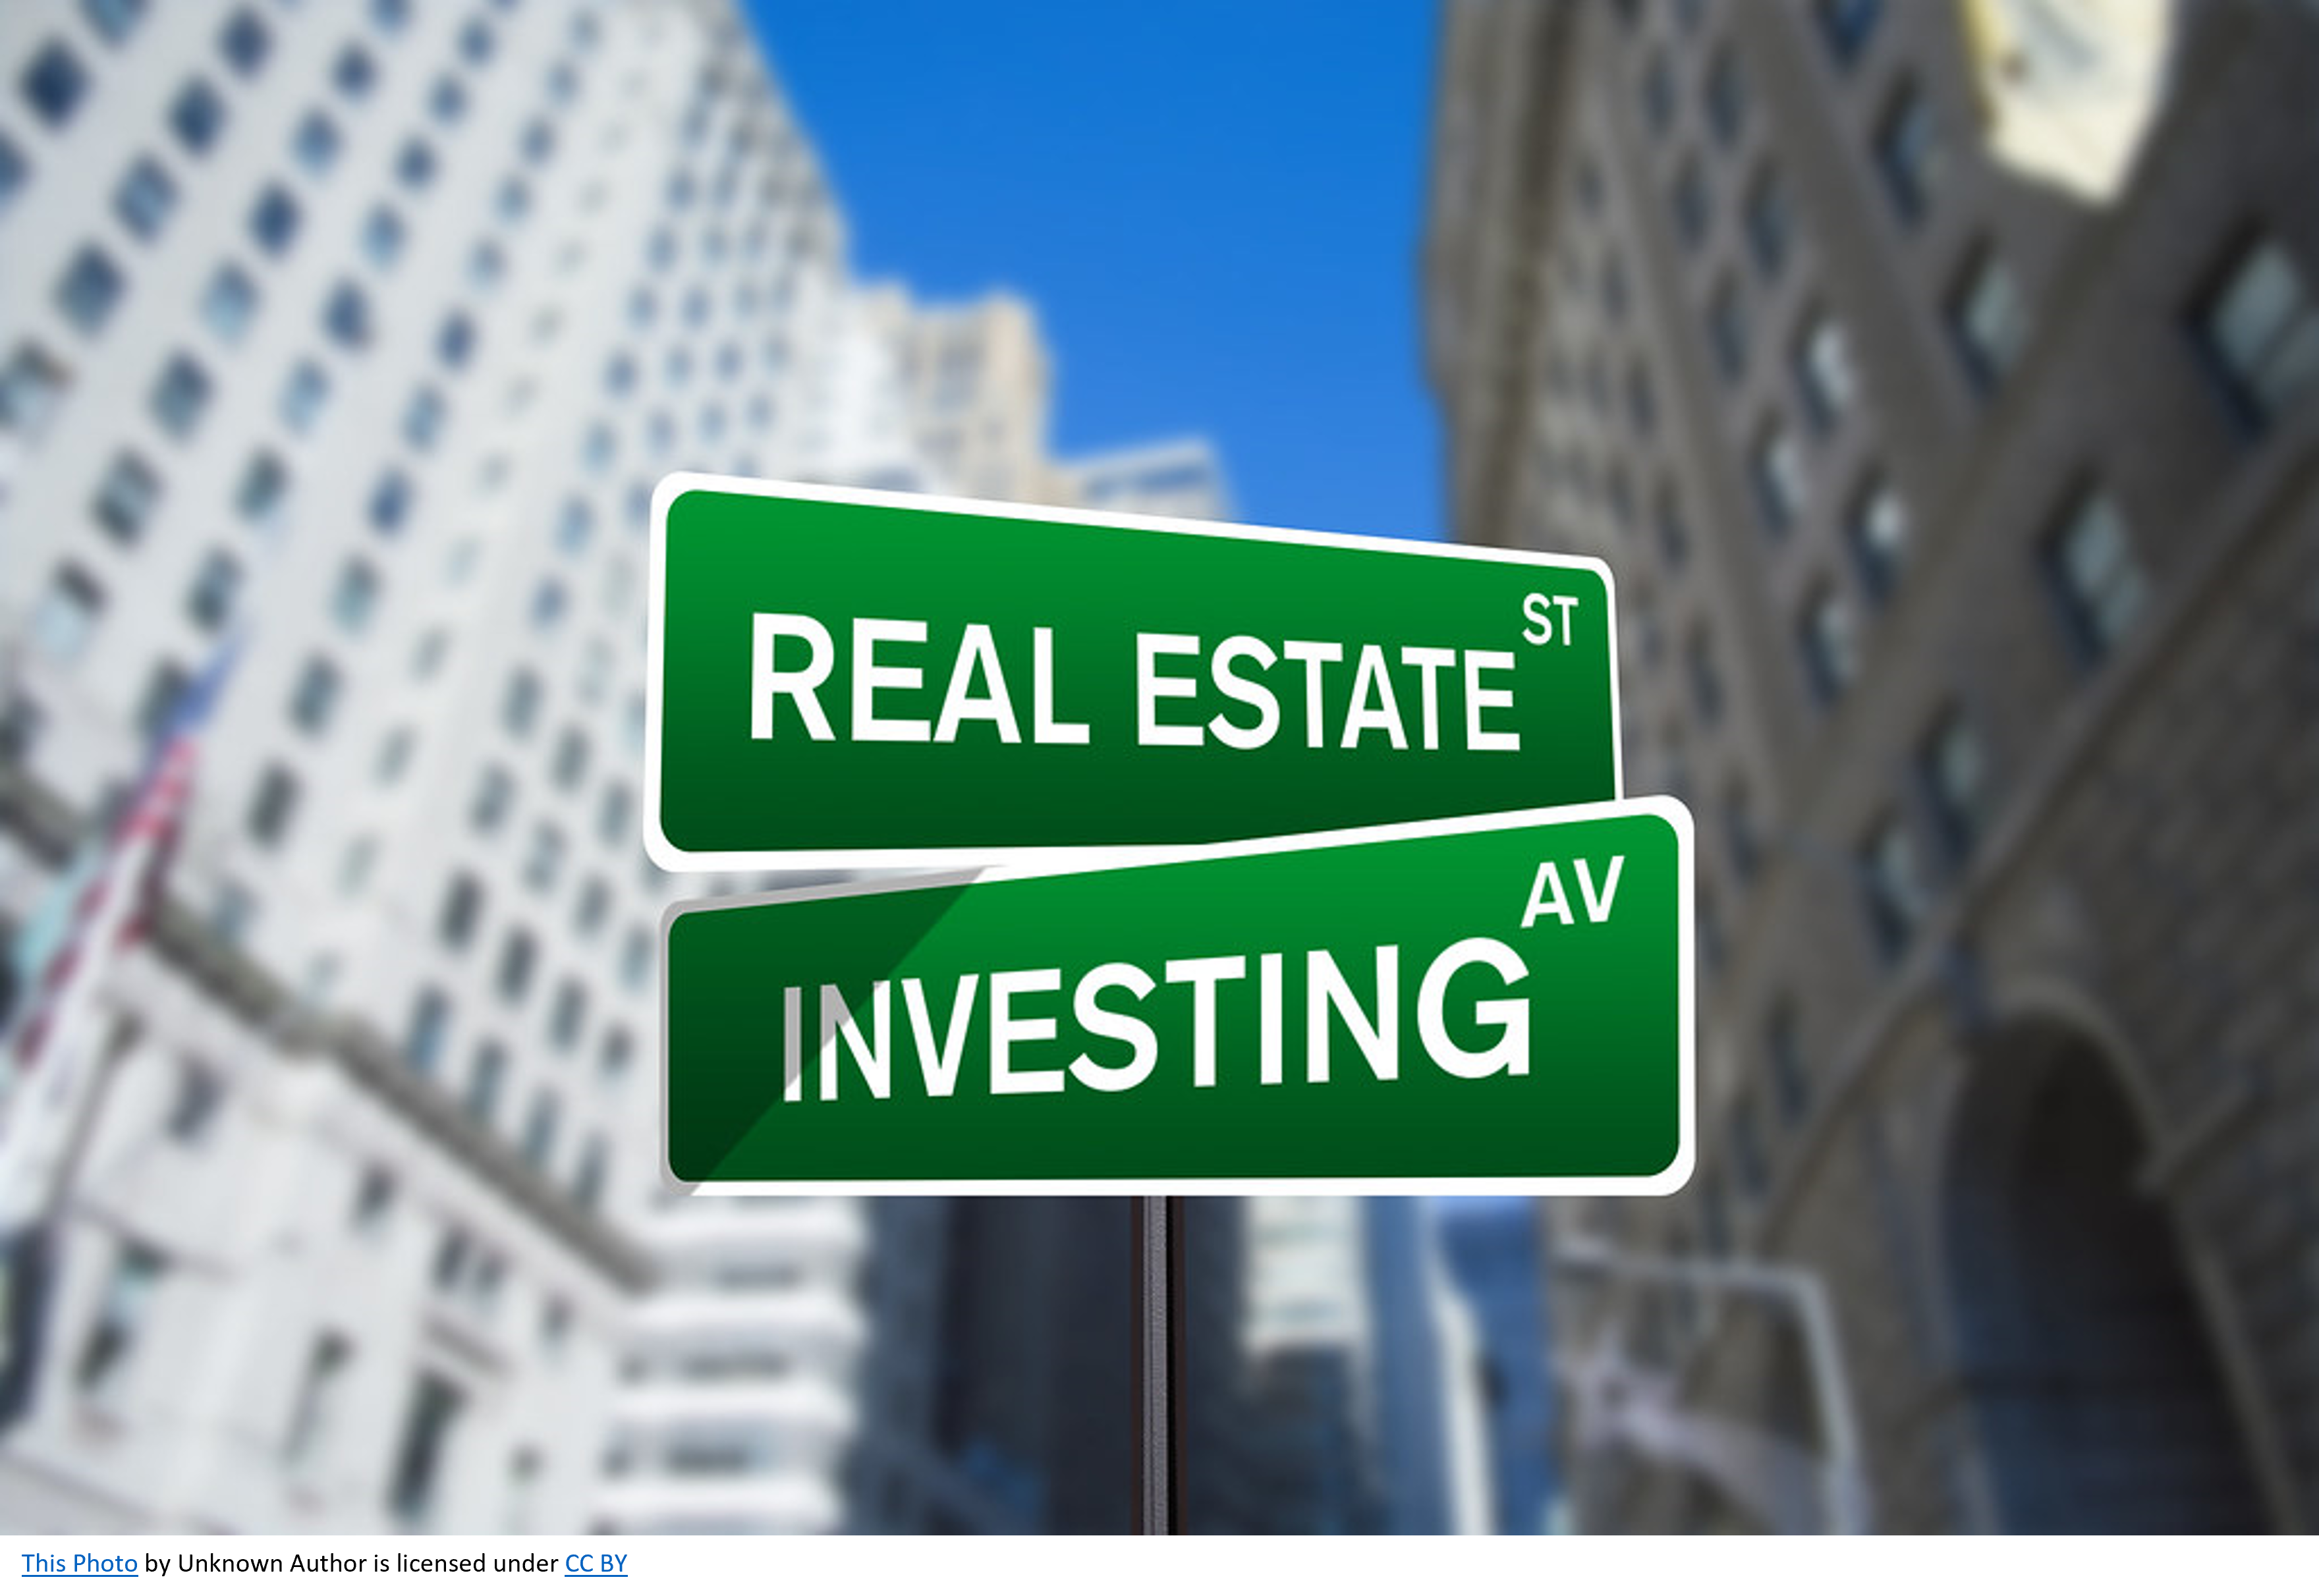 Investing in Stocks vs. Real Estate: A Comparison